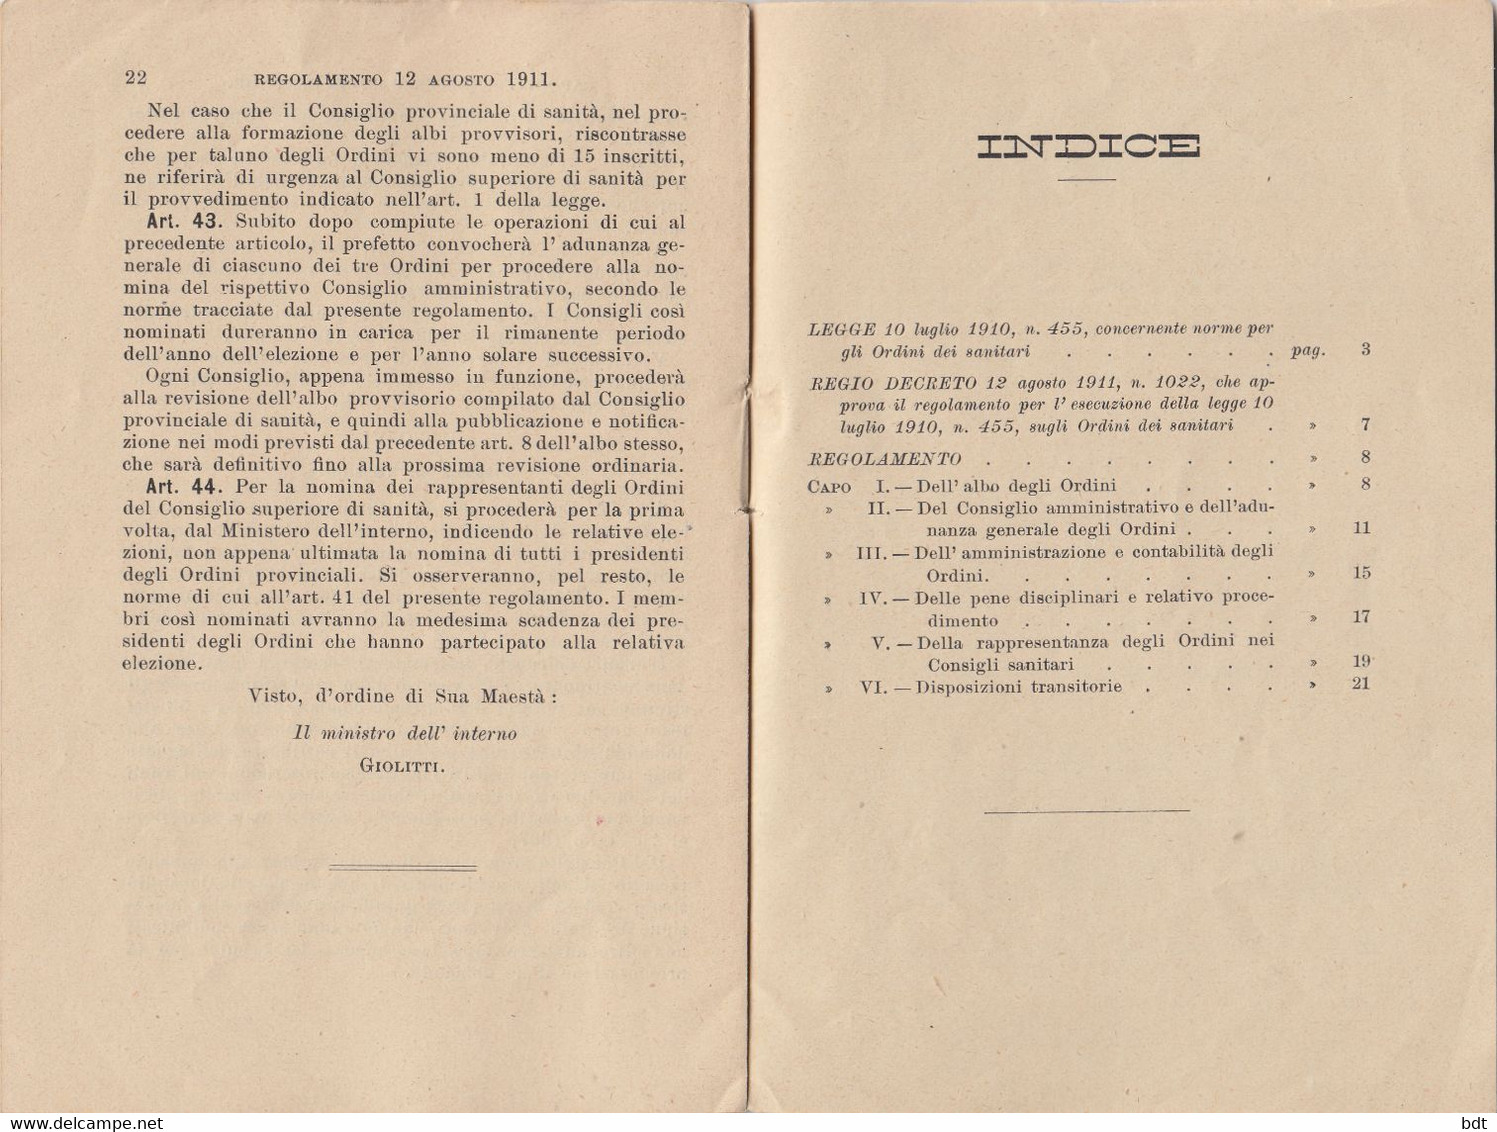 RC093 - 1910 LIBRO COMPLETO 23 PAGINE "LEGGE SUGLI ORDINI DEI SANITARI Del 10/7" - Medicina, Biologia, Chimica